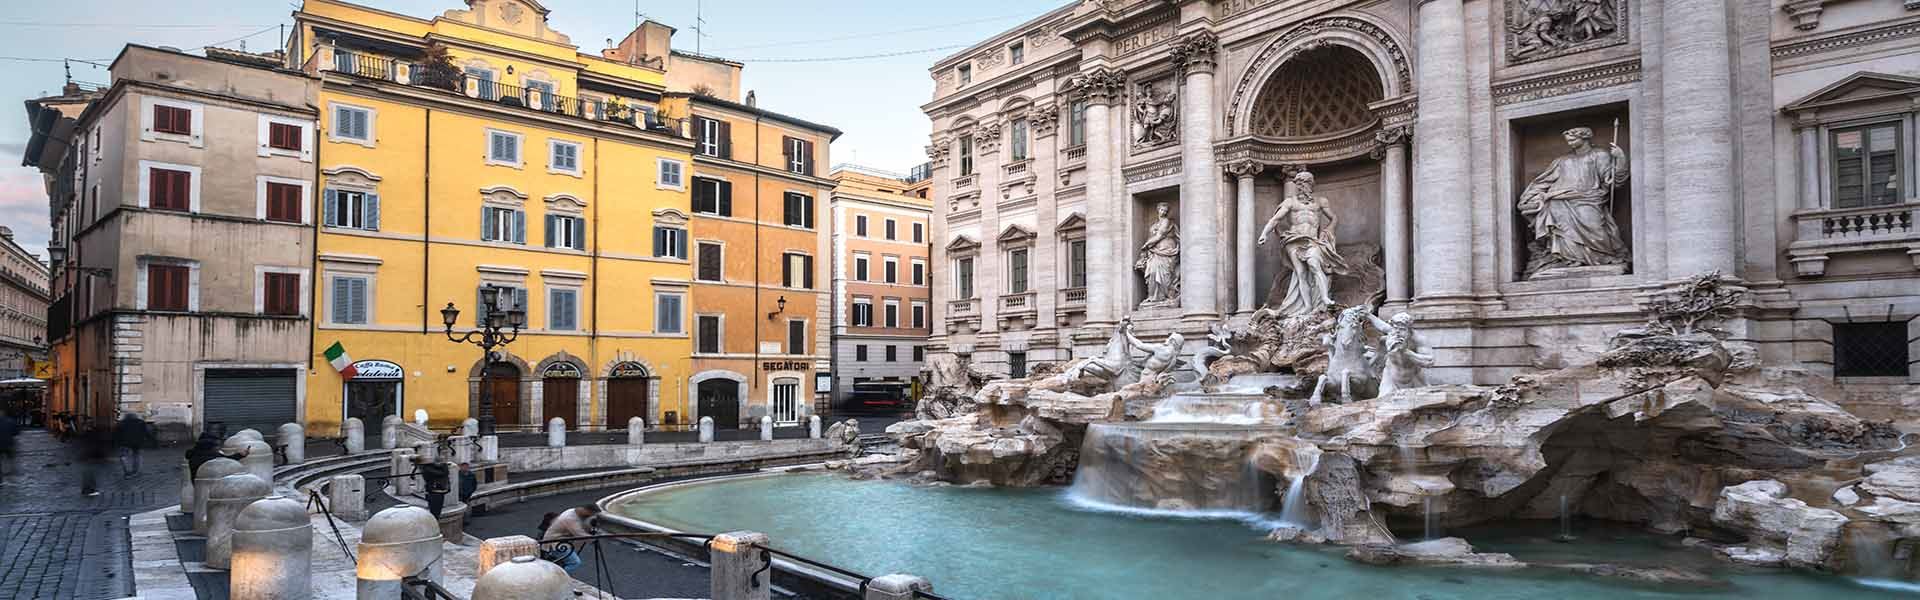 Vista lateral do site Fontana di Trevi. À direita, é possível ver a fonte de água azul cristalina e, logo atrás, o Palazzo Poli e suas pedras. Há vários edifícios em tons de laranja à esquerda.